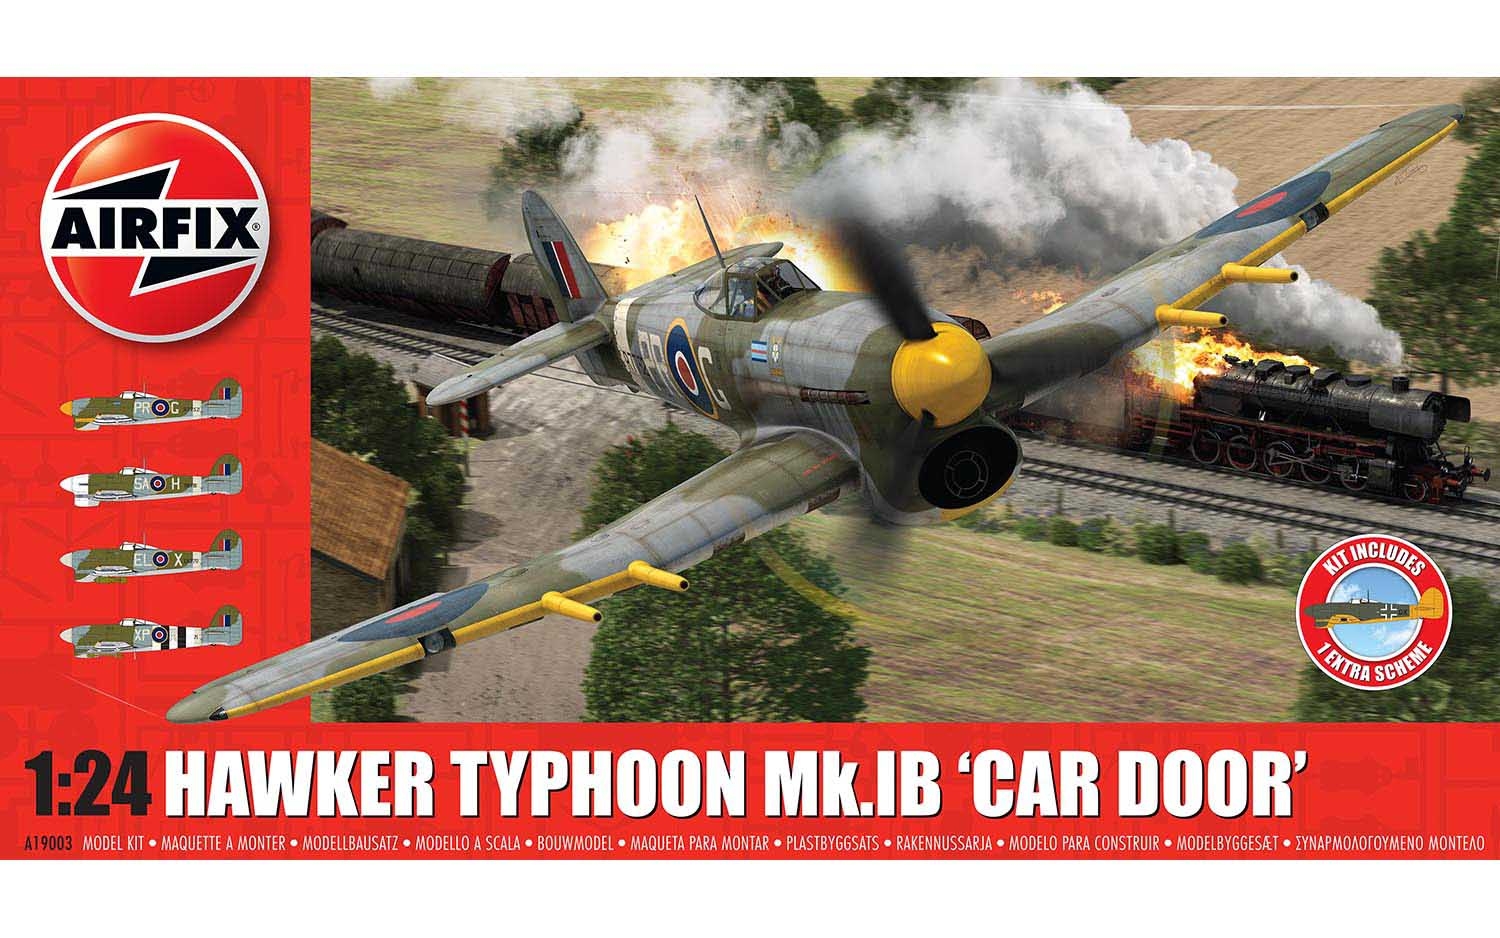 Hawker Typhoon Mk.1B - Car Door